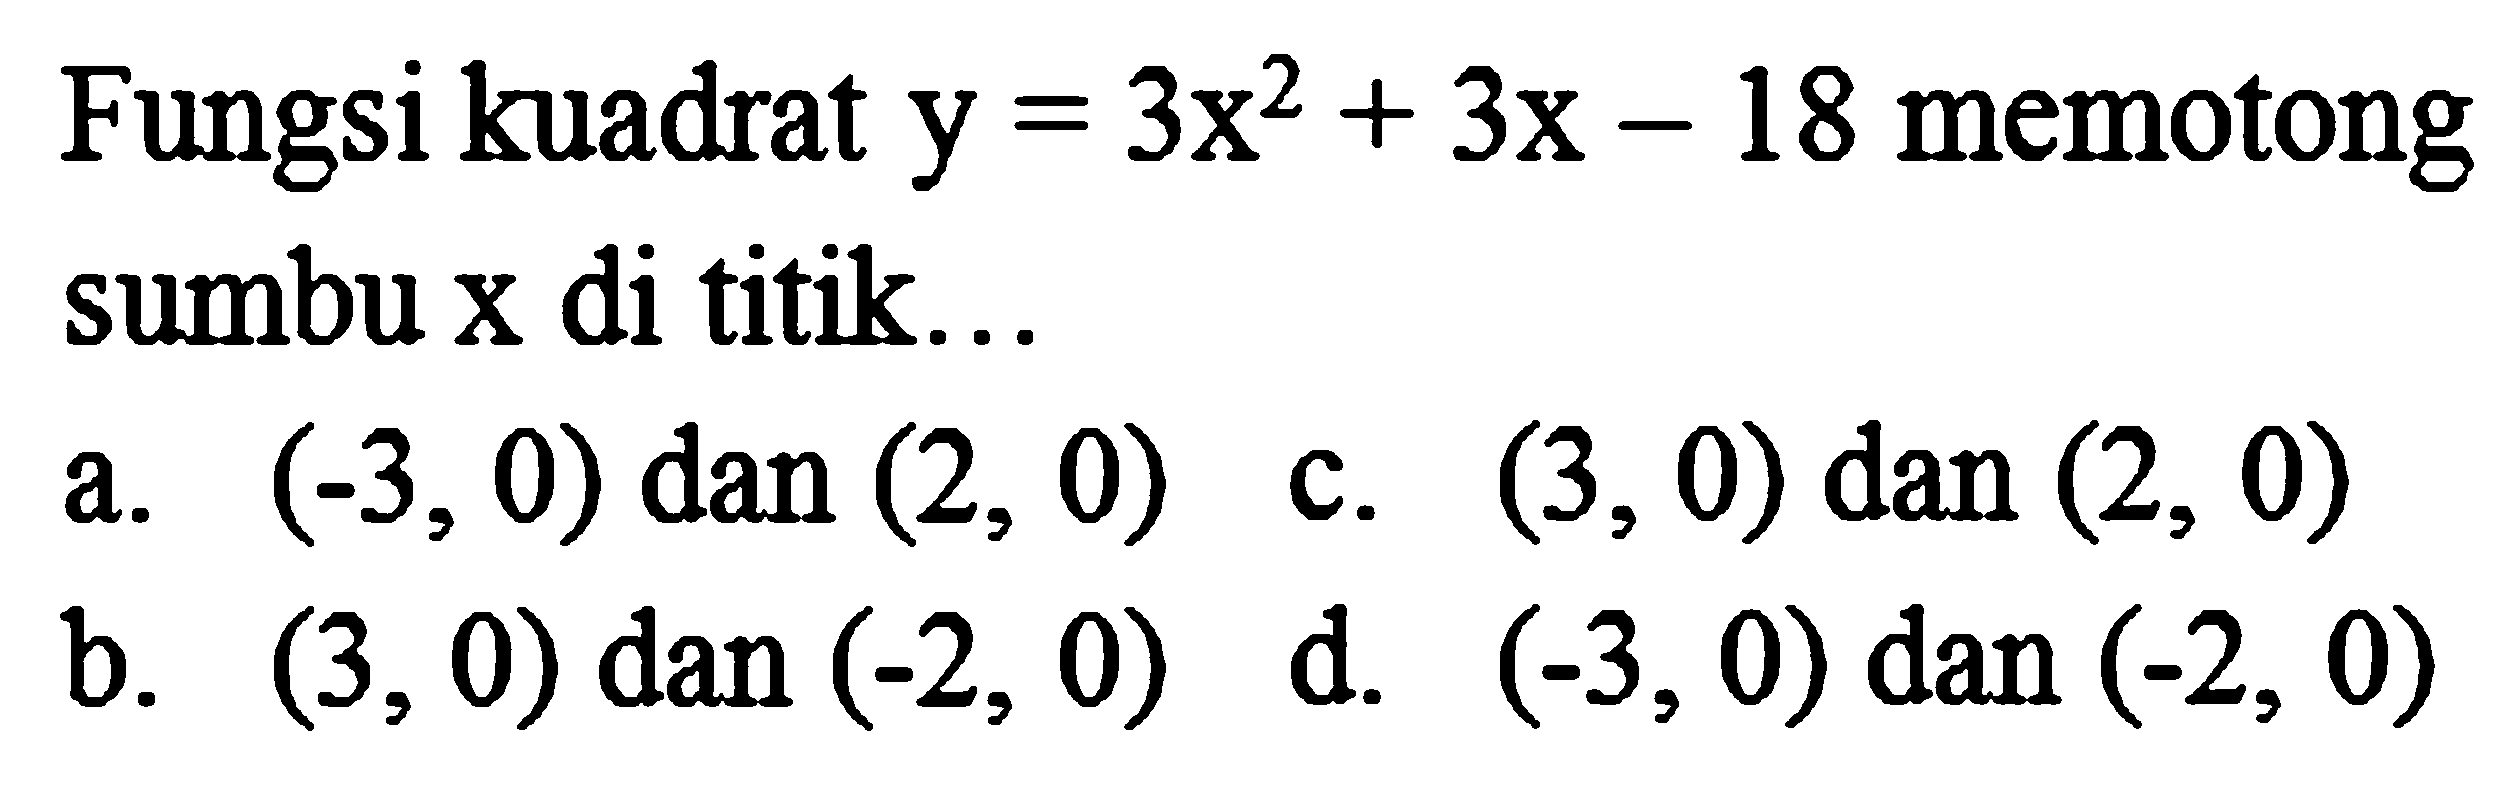 Fungsi kuadrat  y=3 x^(2)+3 x-18  memotong sumbu x di titik...
a.  (-3,0)  dan  (2,0)  c.  (3,0)  dan  (2,0) 
b.  (3,0)  dan  (-2,0) 
d.  (-3,0)  dan  (-2,0) 